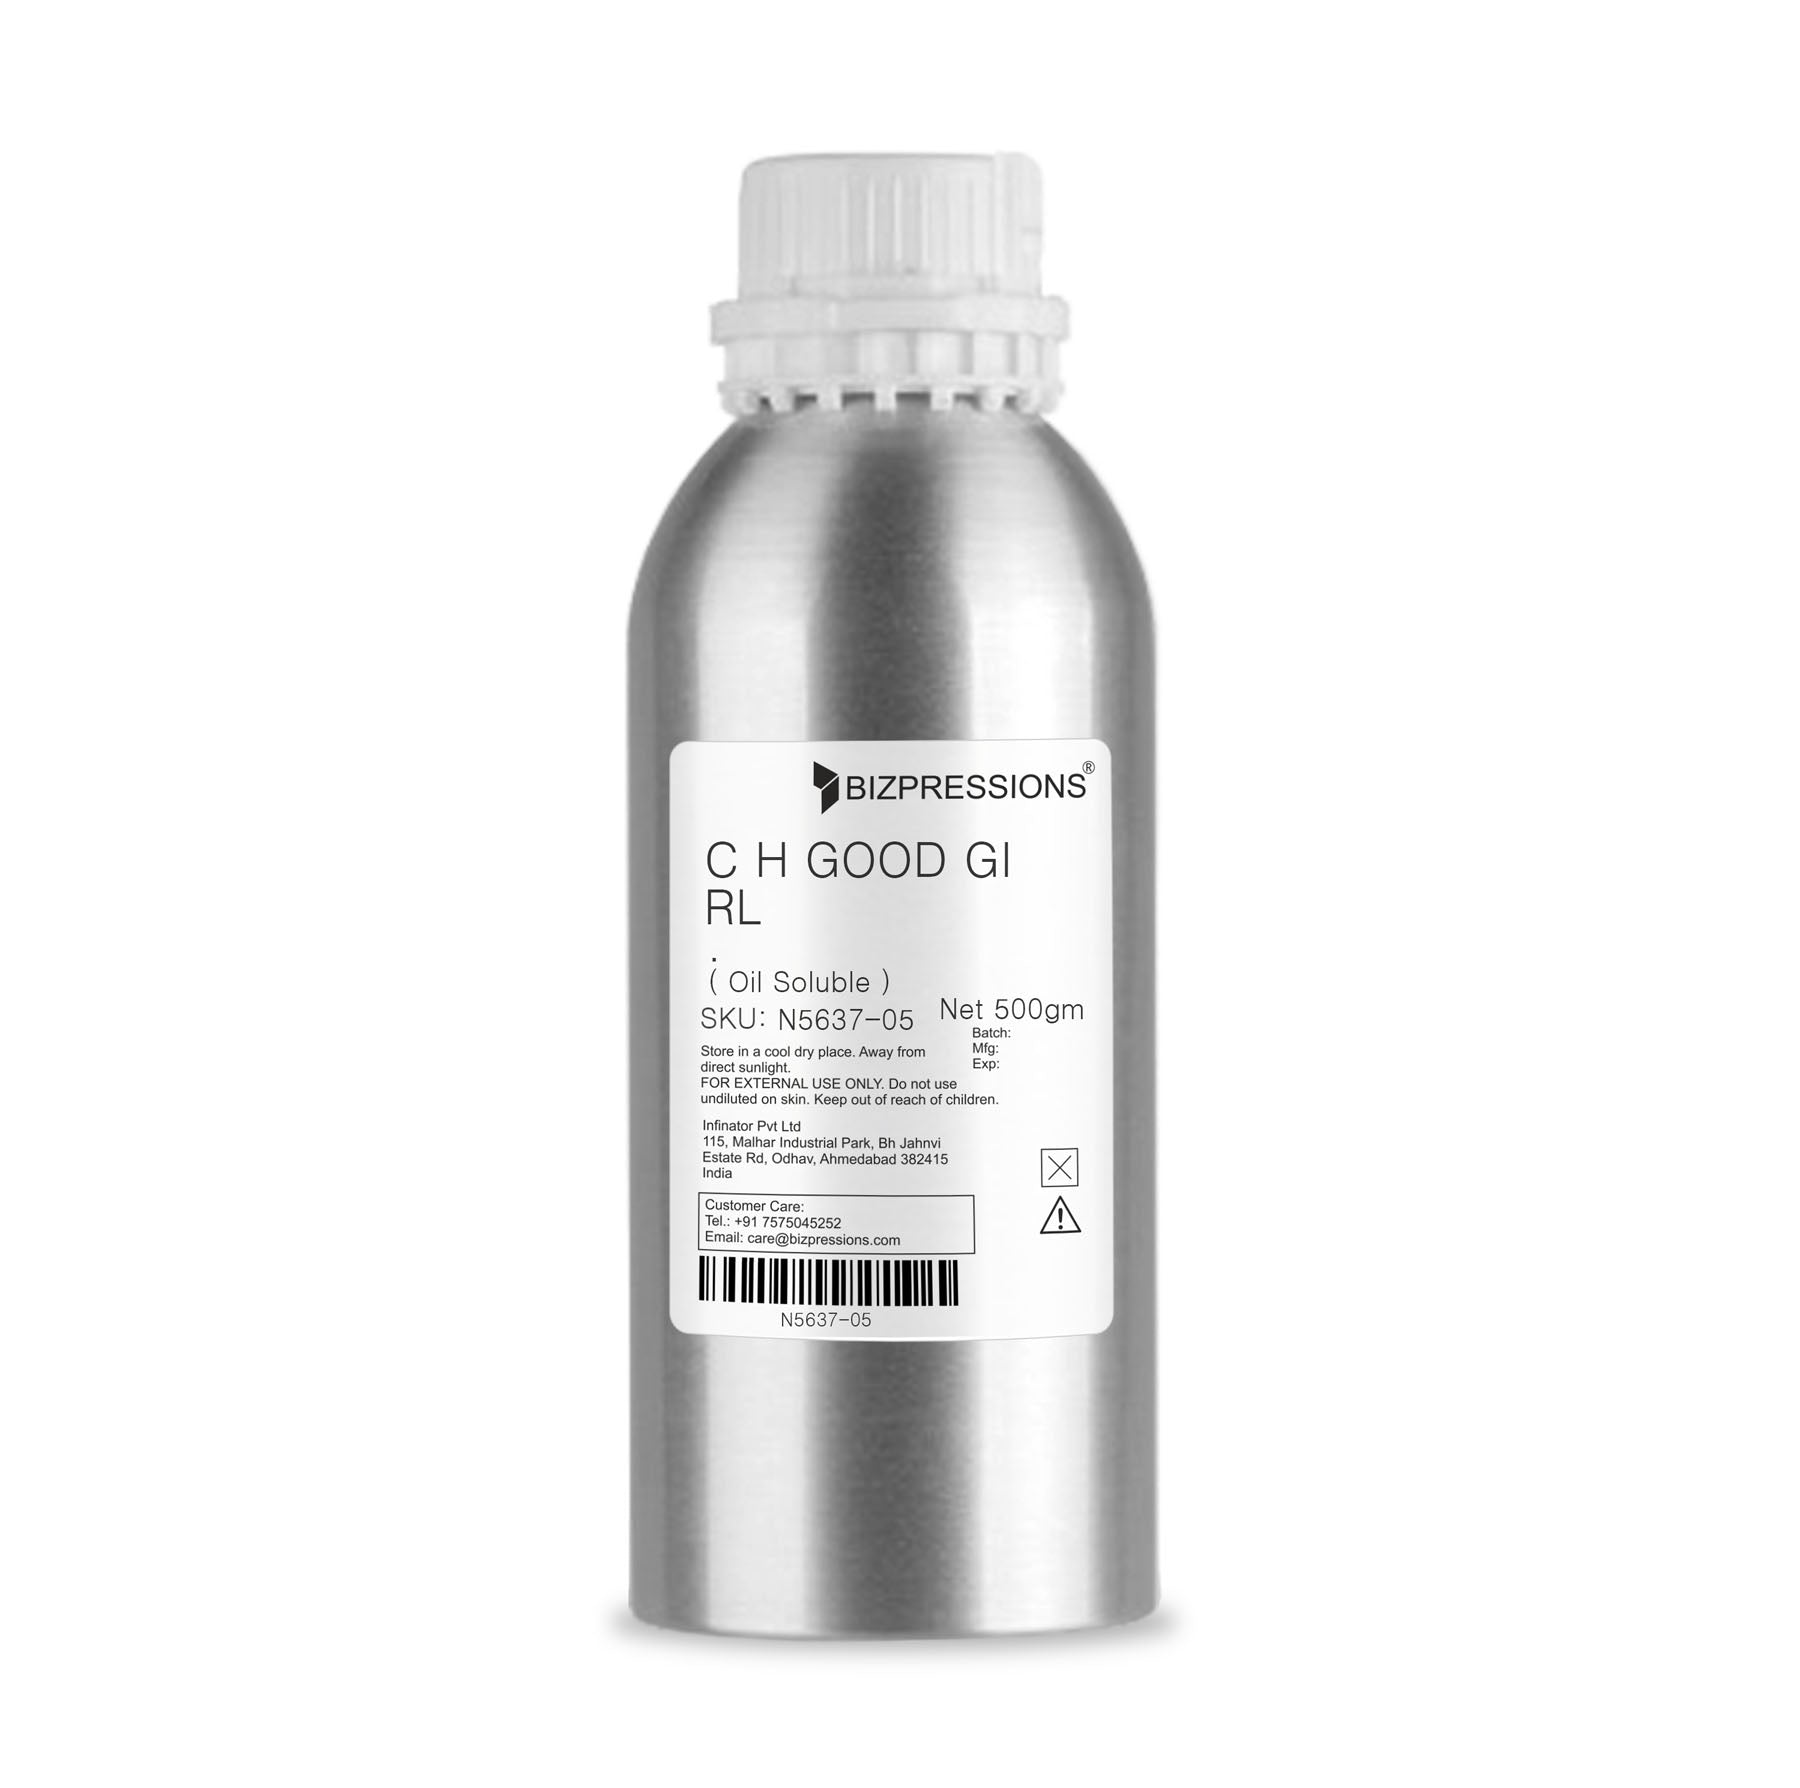 C H GOOD GIRL - Fragrance ( Oil Soluble ) - 500 gm